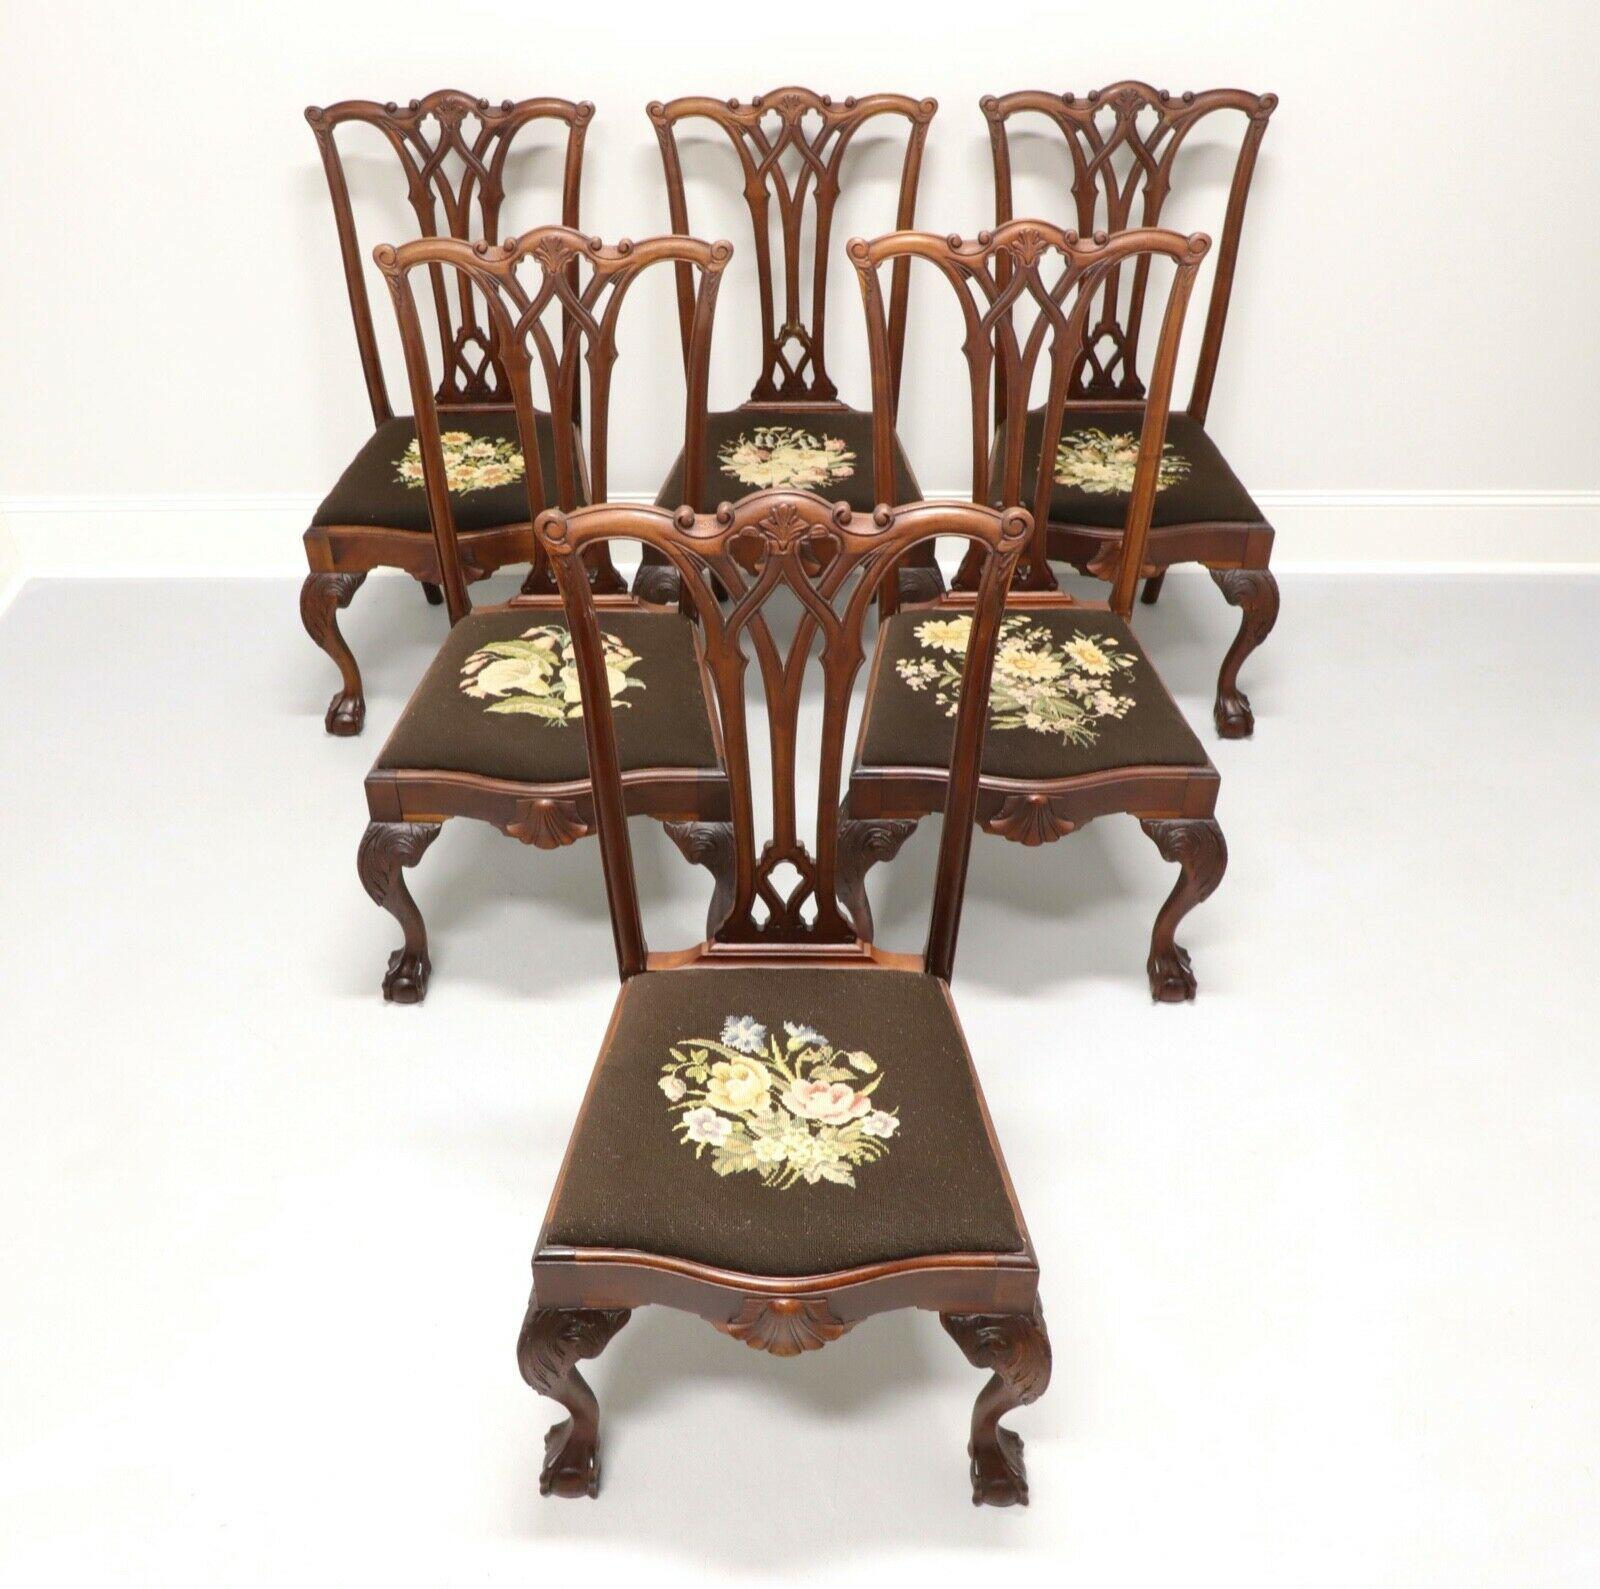 Un ensemble de six chaises latérales de salle à manger anciennes en acajou dans le style Chippendale, sans marque. Dossiers sculptés, sièges en aiguille à motifs floraux variés, genoux sculptés, pieds en boule et griffes. Probablement fabriqué aux